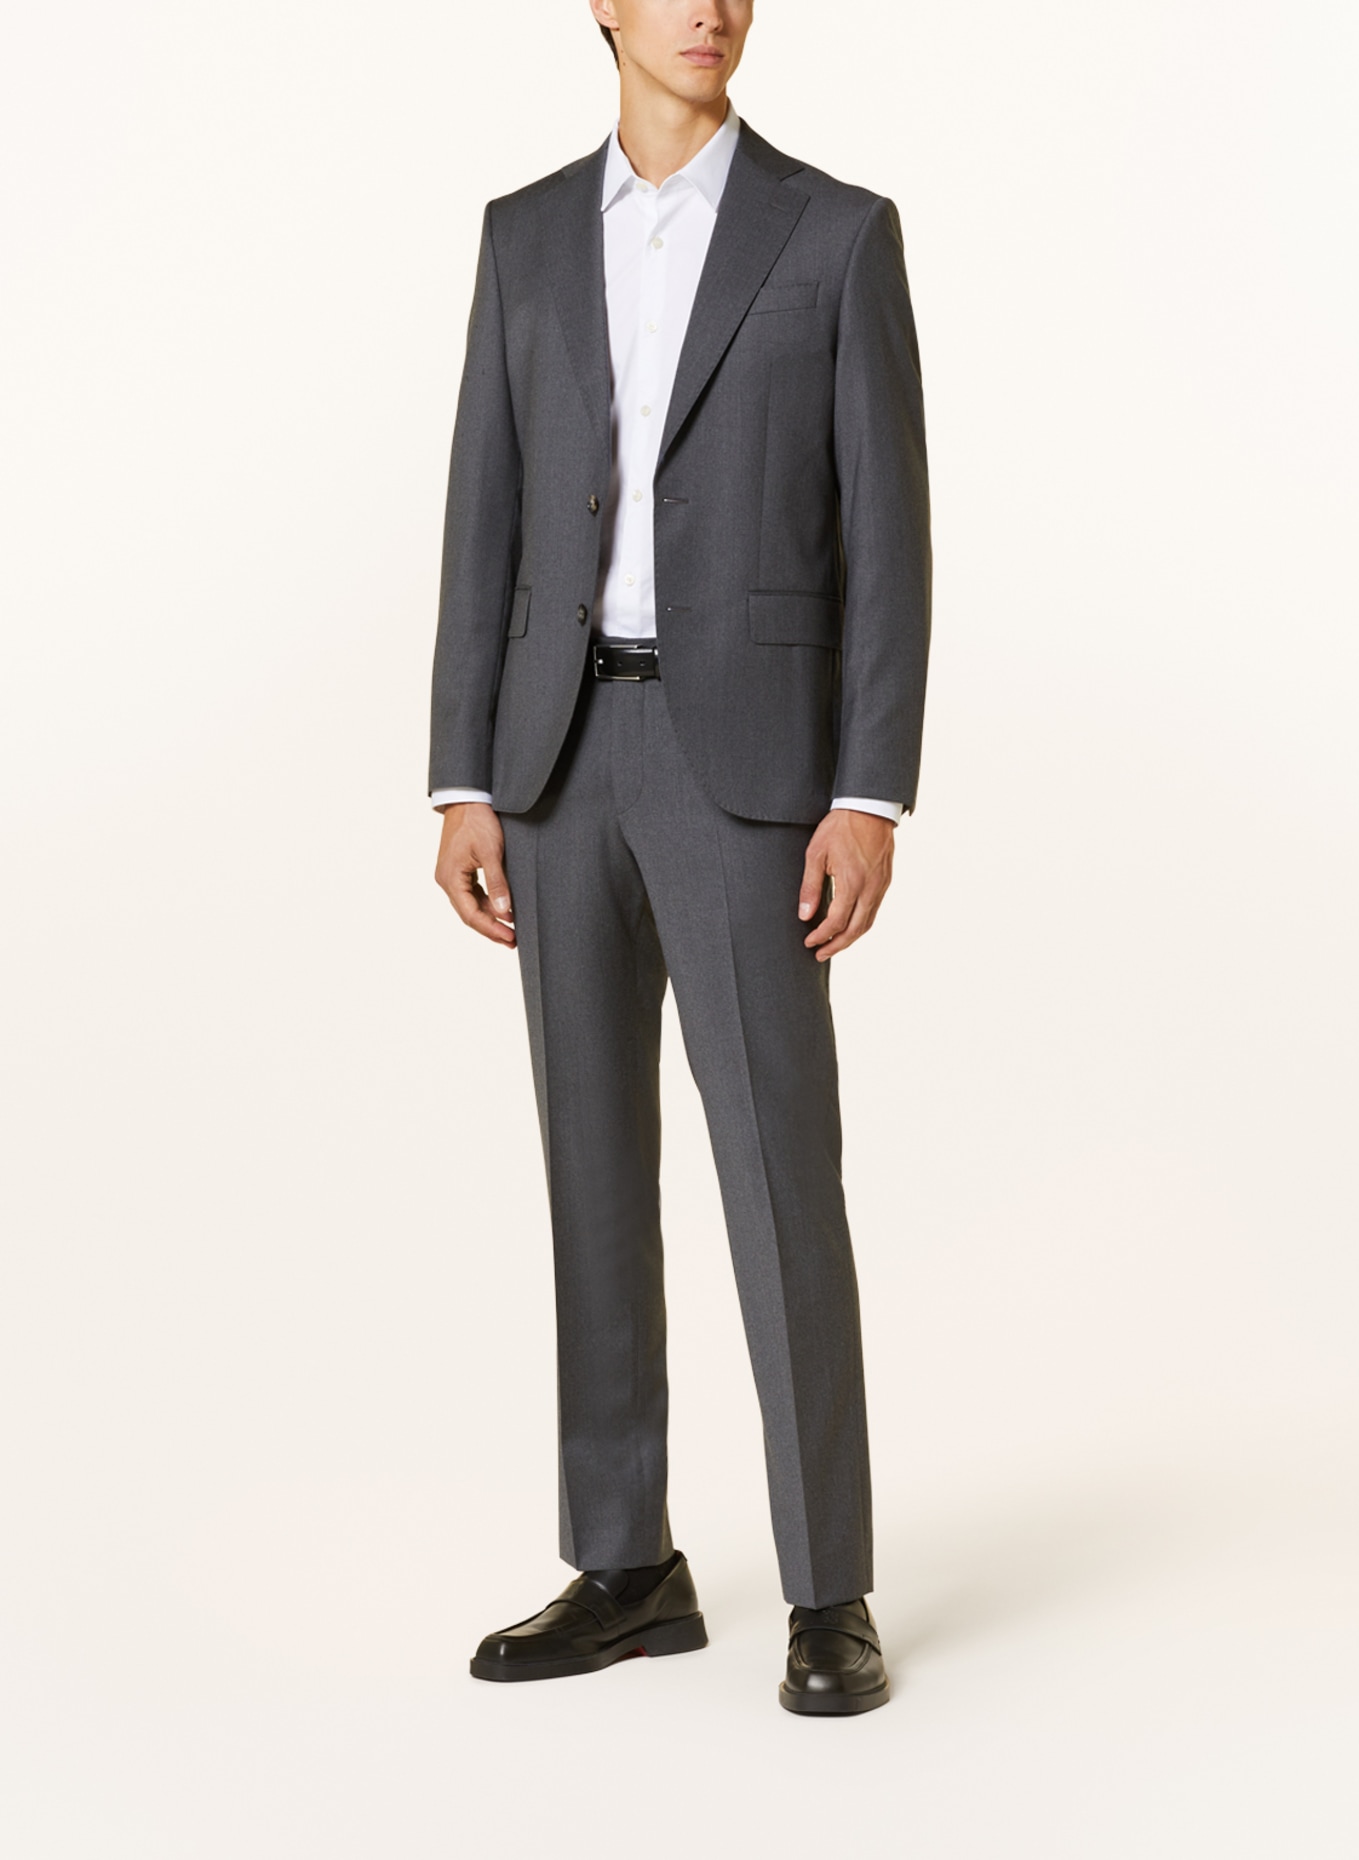 SAND COPENHAGEN Suit trousers CRAIG modern fit, Color: 170 Light Grey (Image 2)